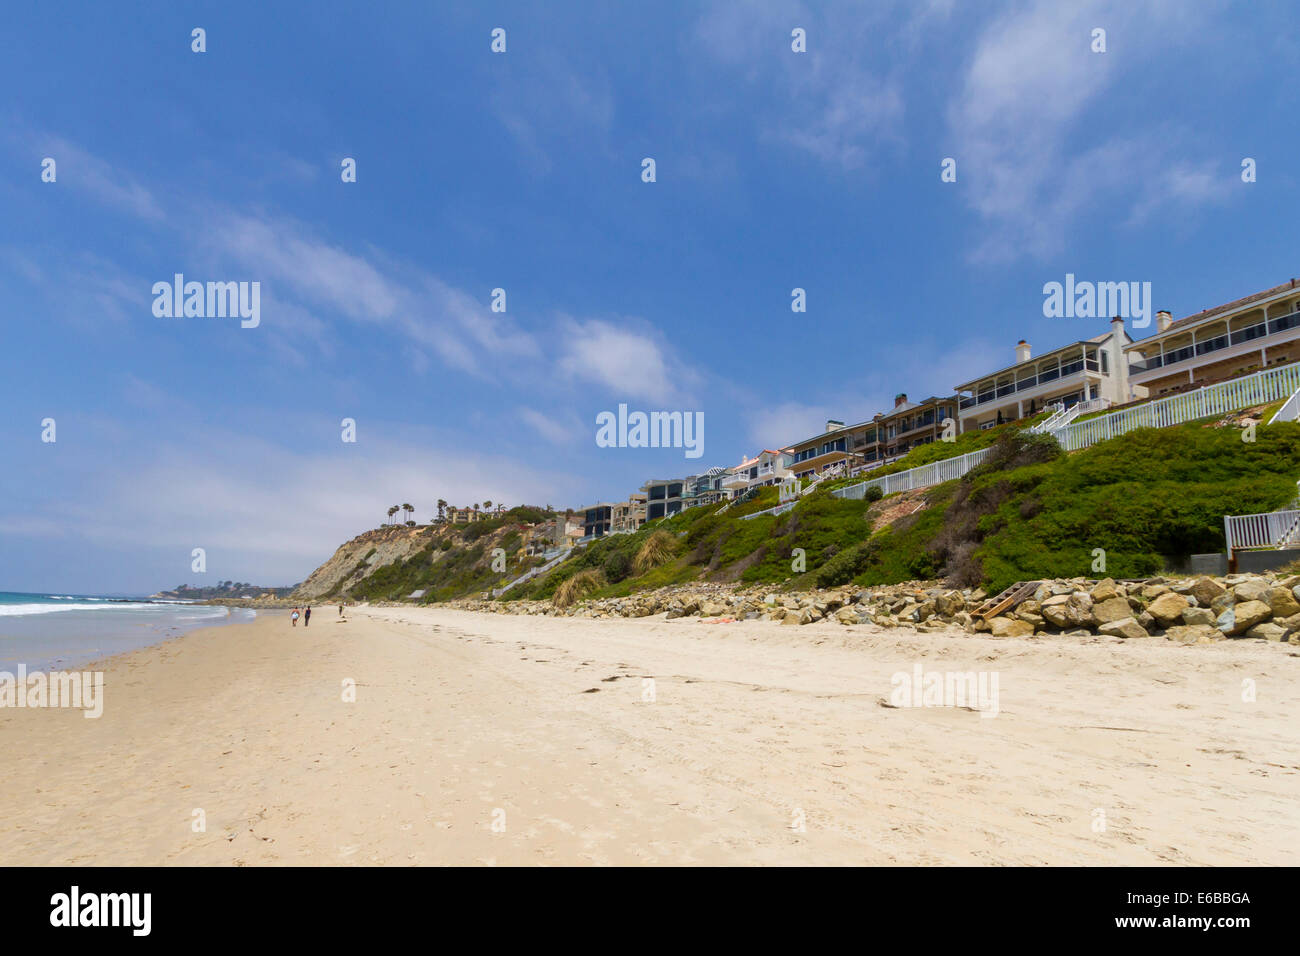 États-unis, Californie, Dana Point. Maisons avec une vue sur l'océan Pacifique au large de la Californie. Banque D'Images